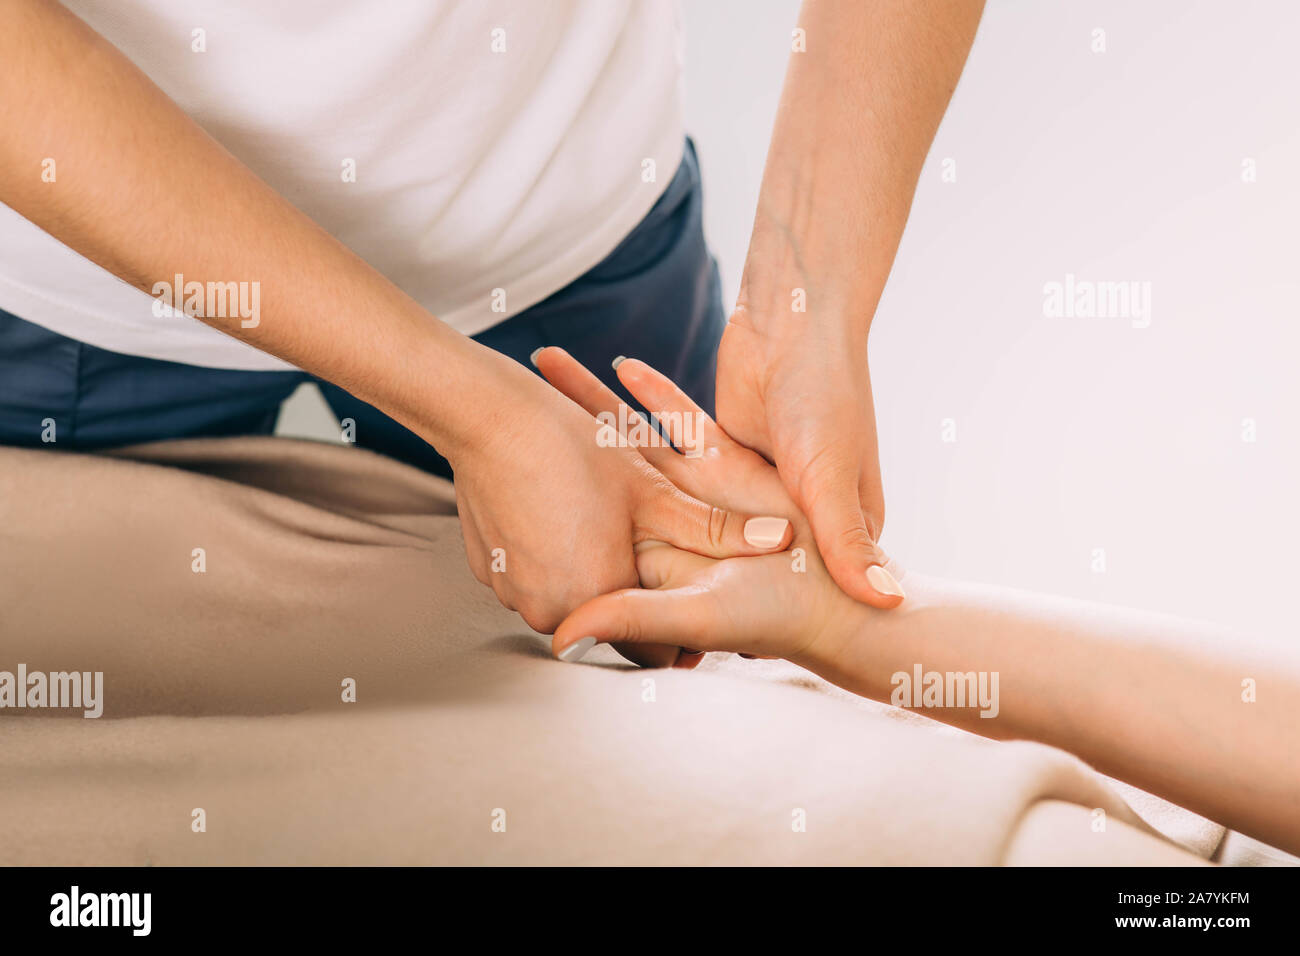 Main de femme cultivée tout en massage des mains. femme reçoit un massage des mains d'un massothérapeute professionnel Banque D'Images